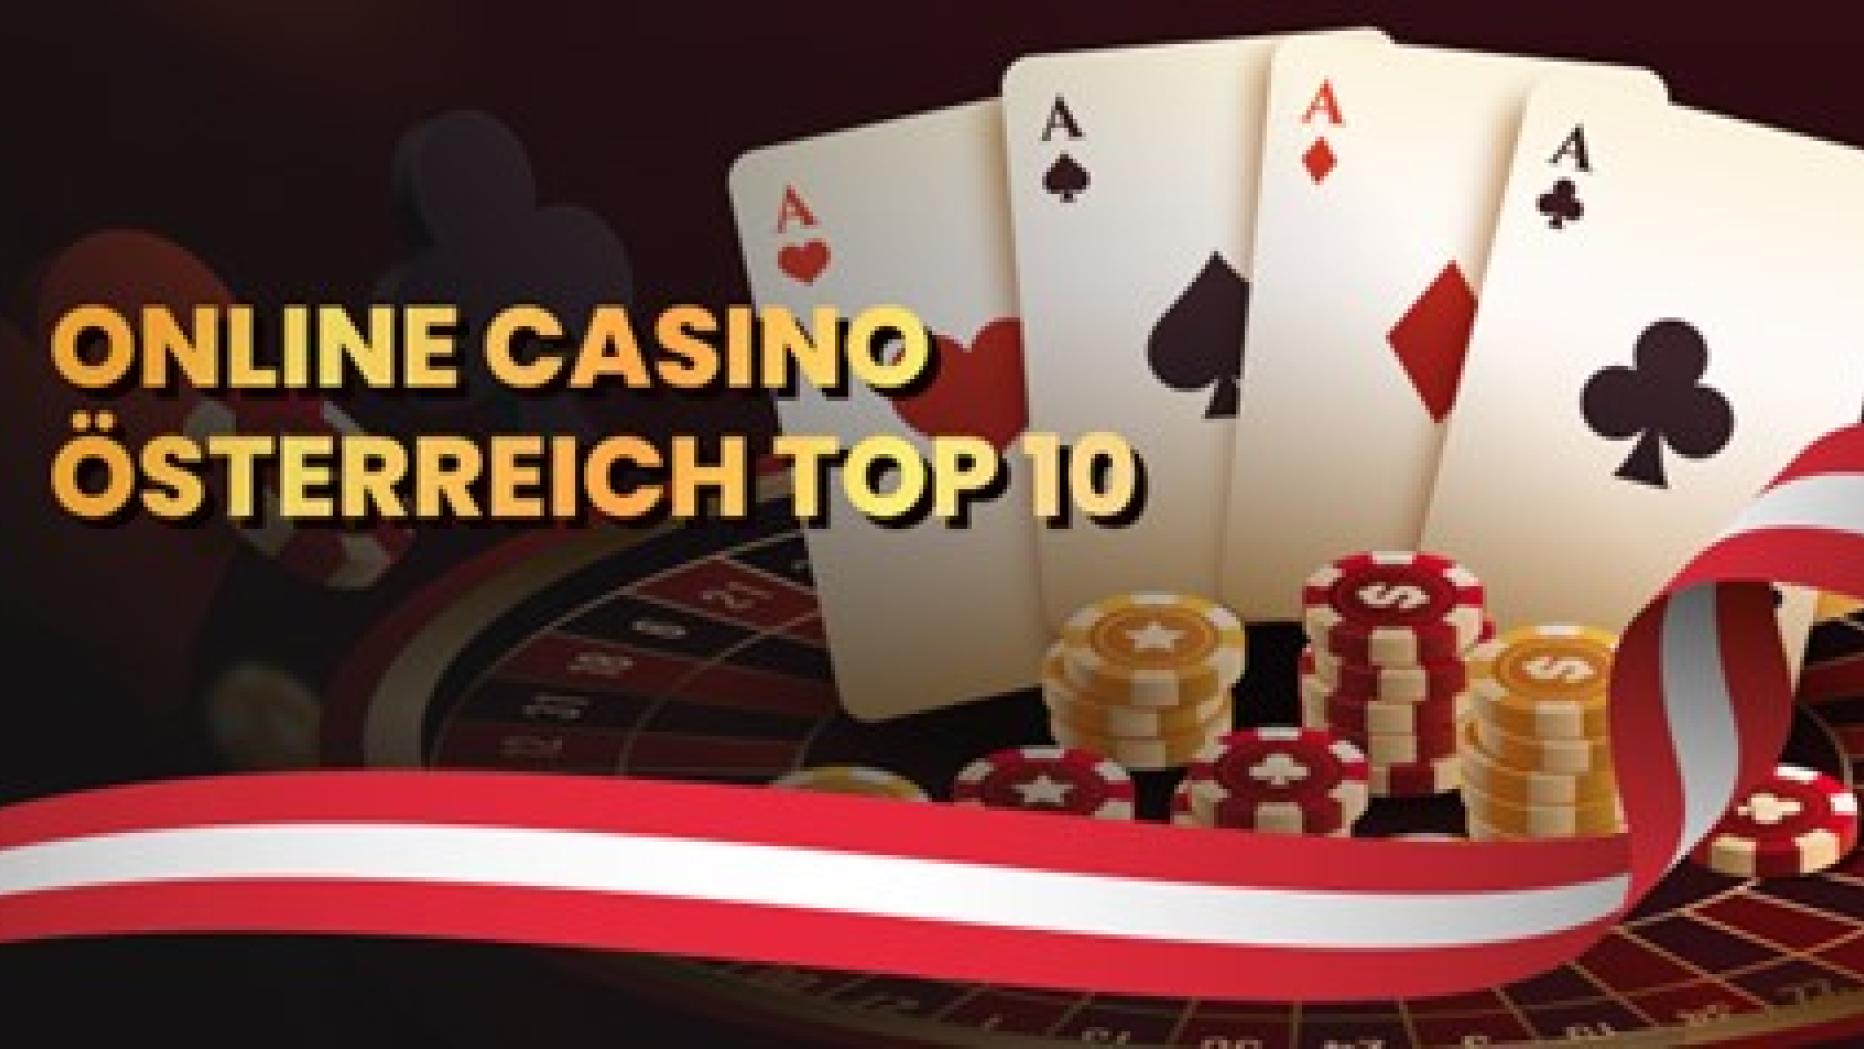 5 Probleme, die jeder mit casino anbieter hat – wie man sie löst